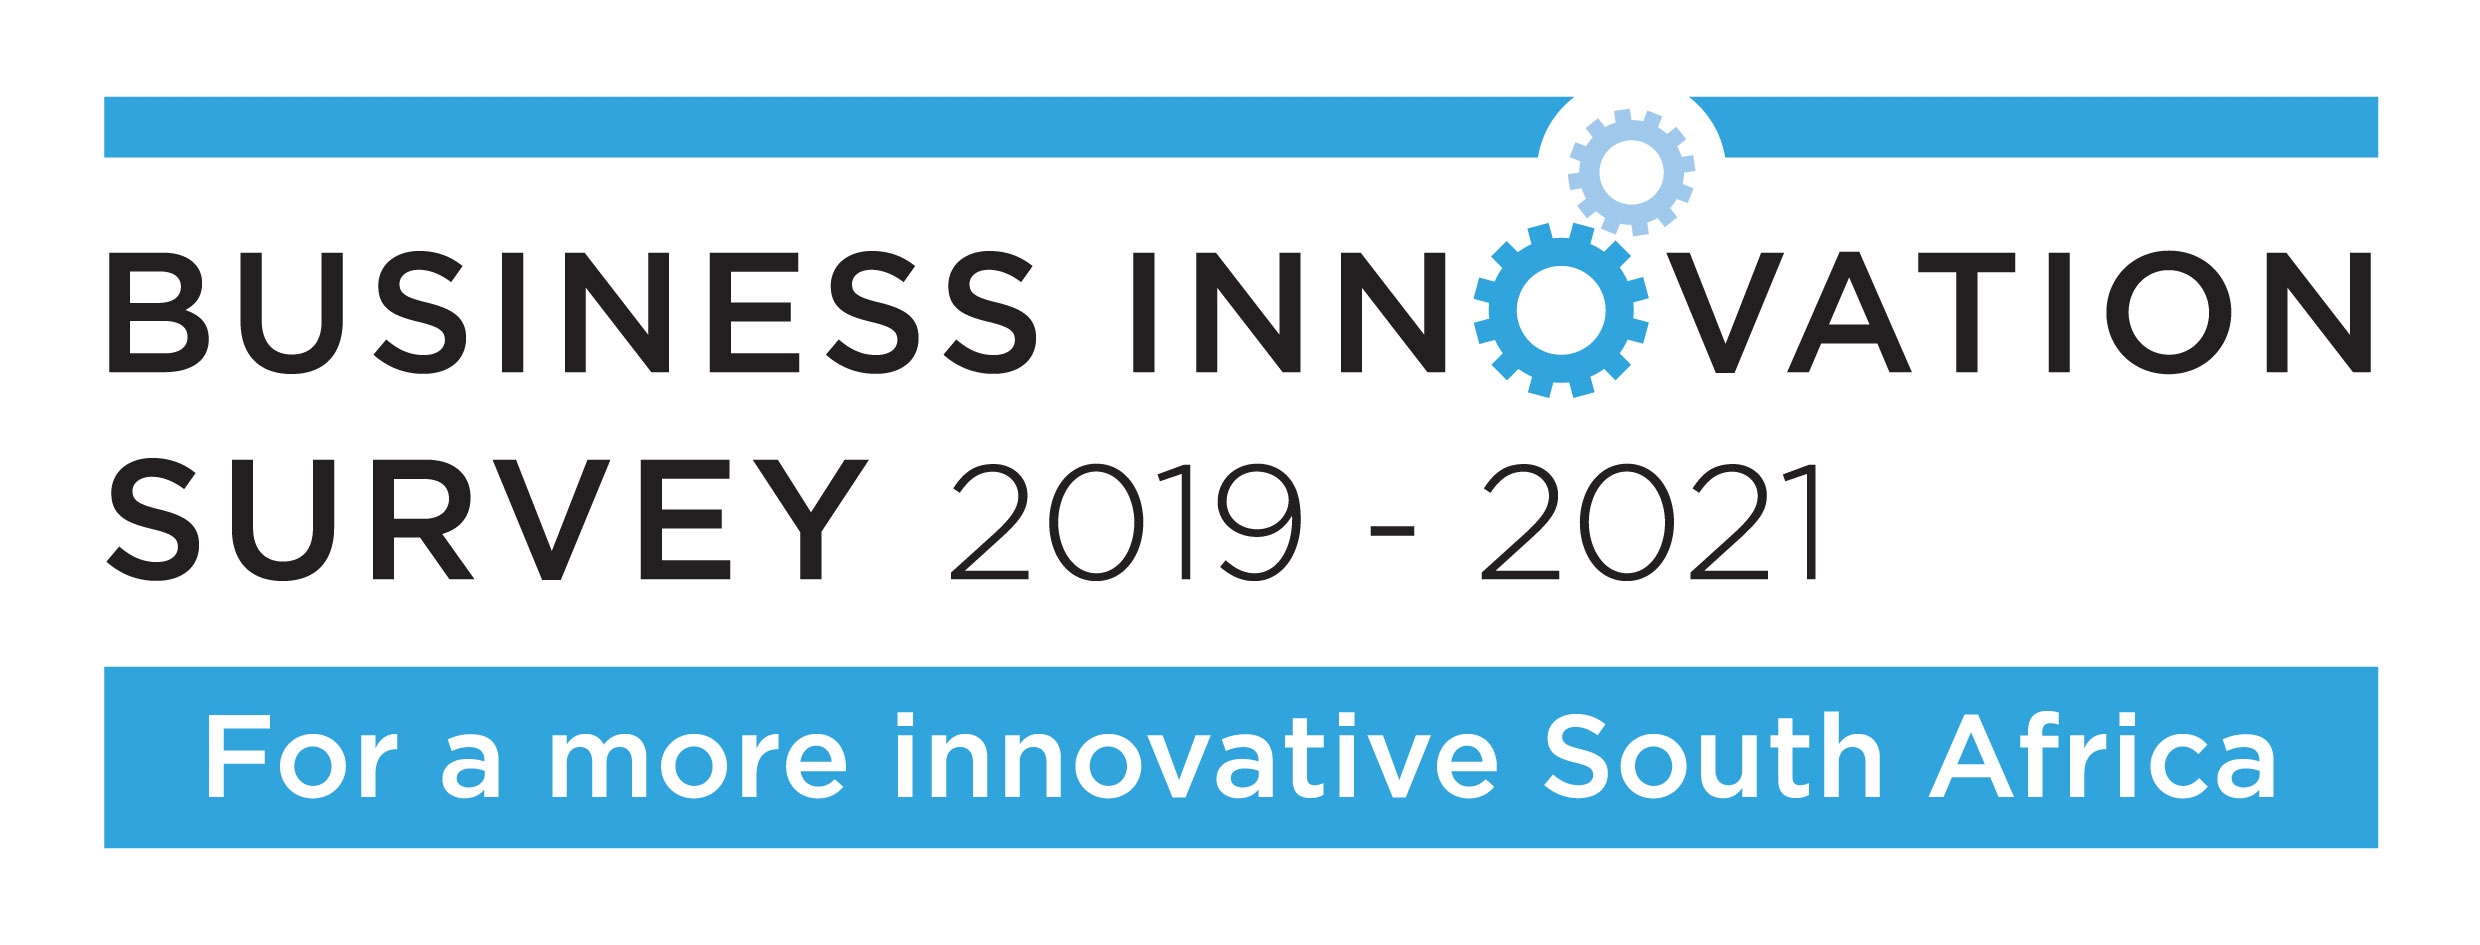 Business Innovation Survey 2019-2021